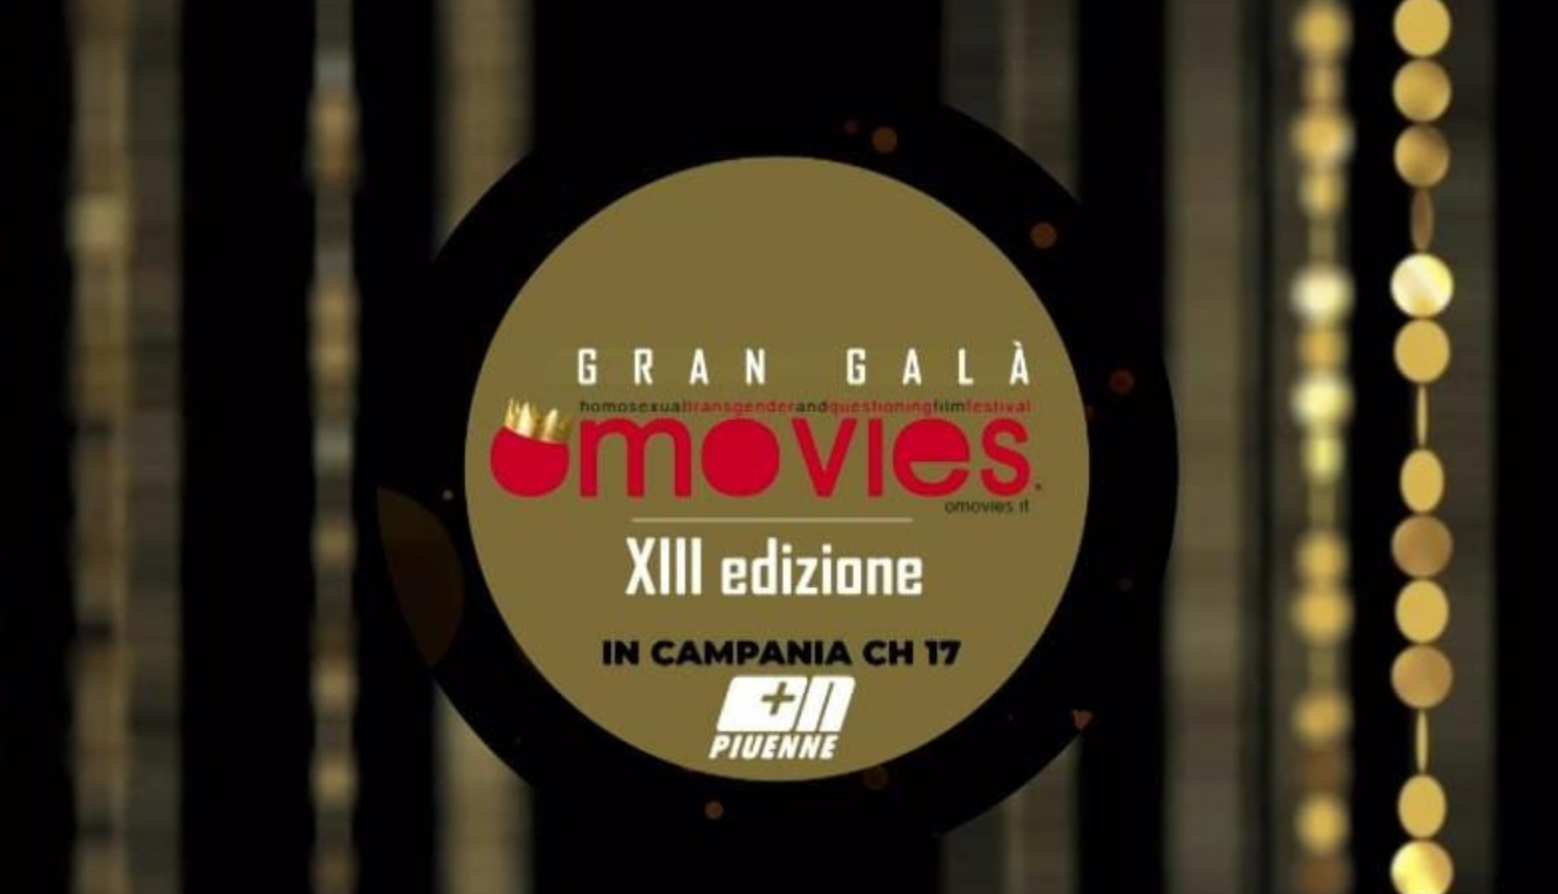 #OMOVIES | Film Festival 2020: Gran Gala in onda su Piuenne 